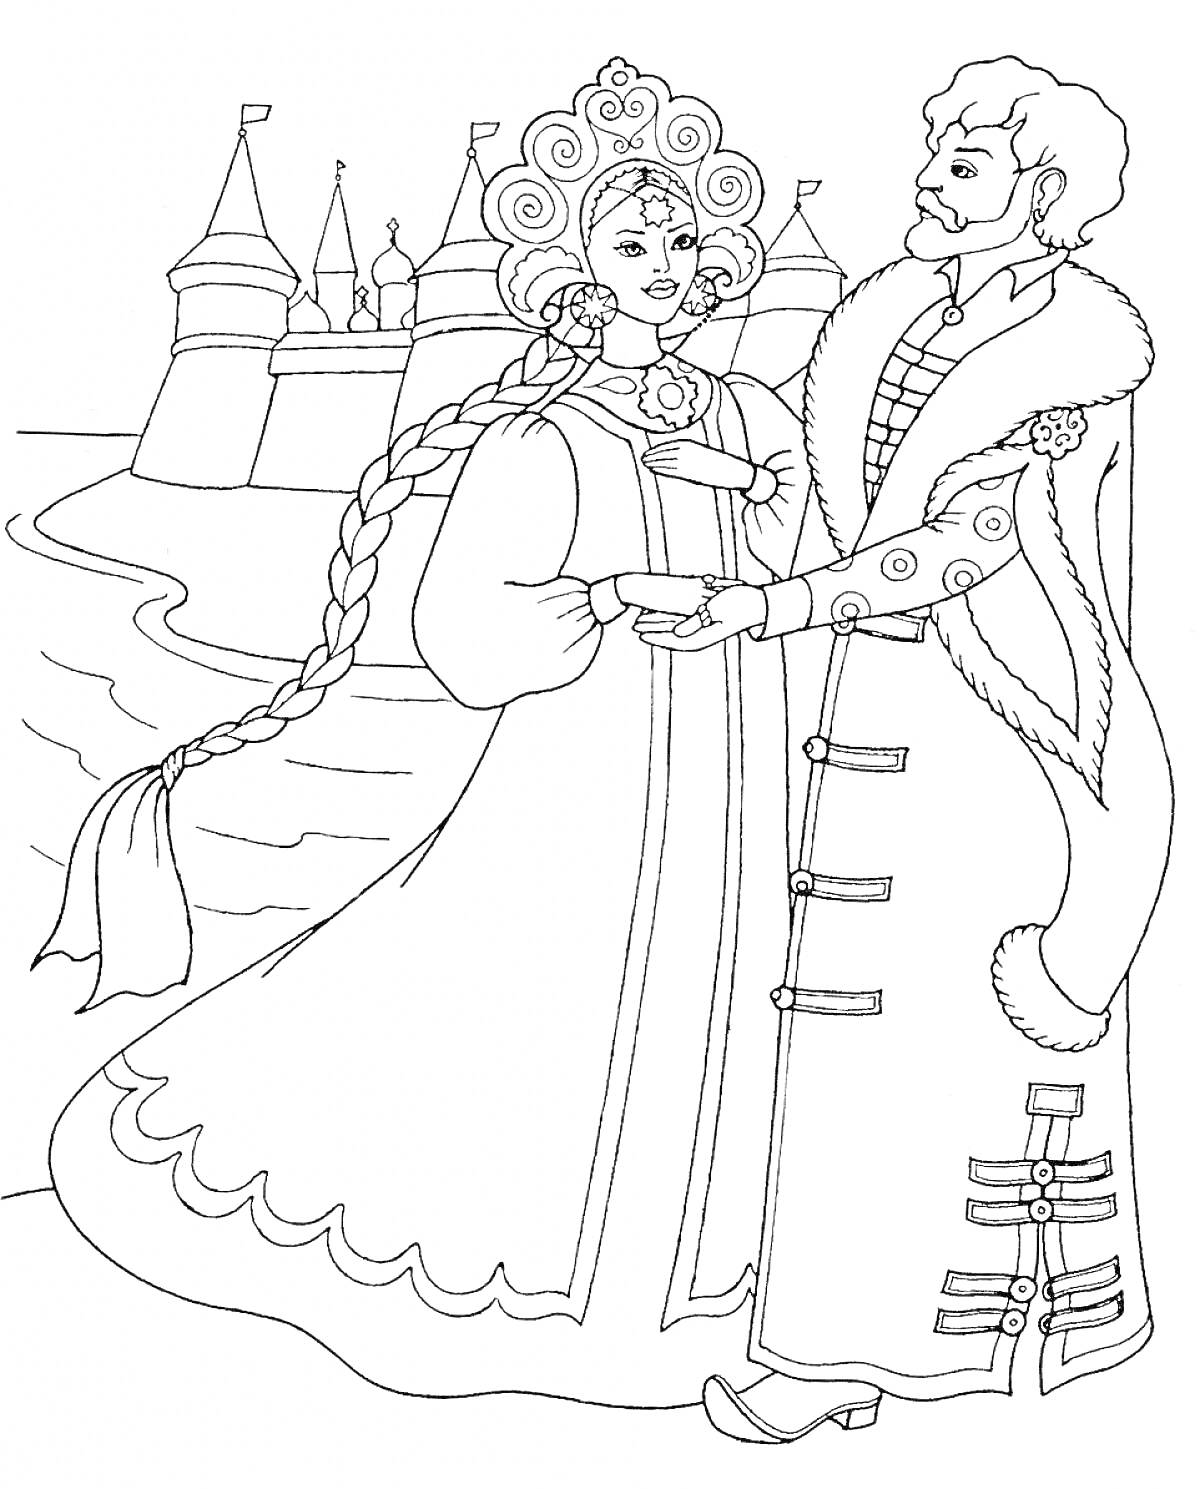 Раскраска царь и царевна у замка-резиденции, мужчина в длинном плаще с мехом, женщина с косой в кокошнике